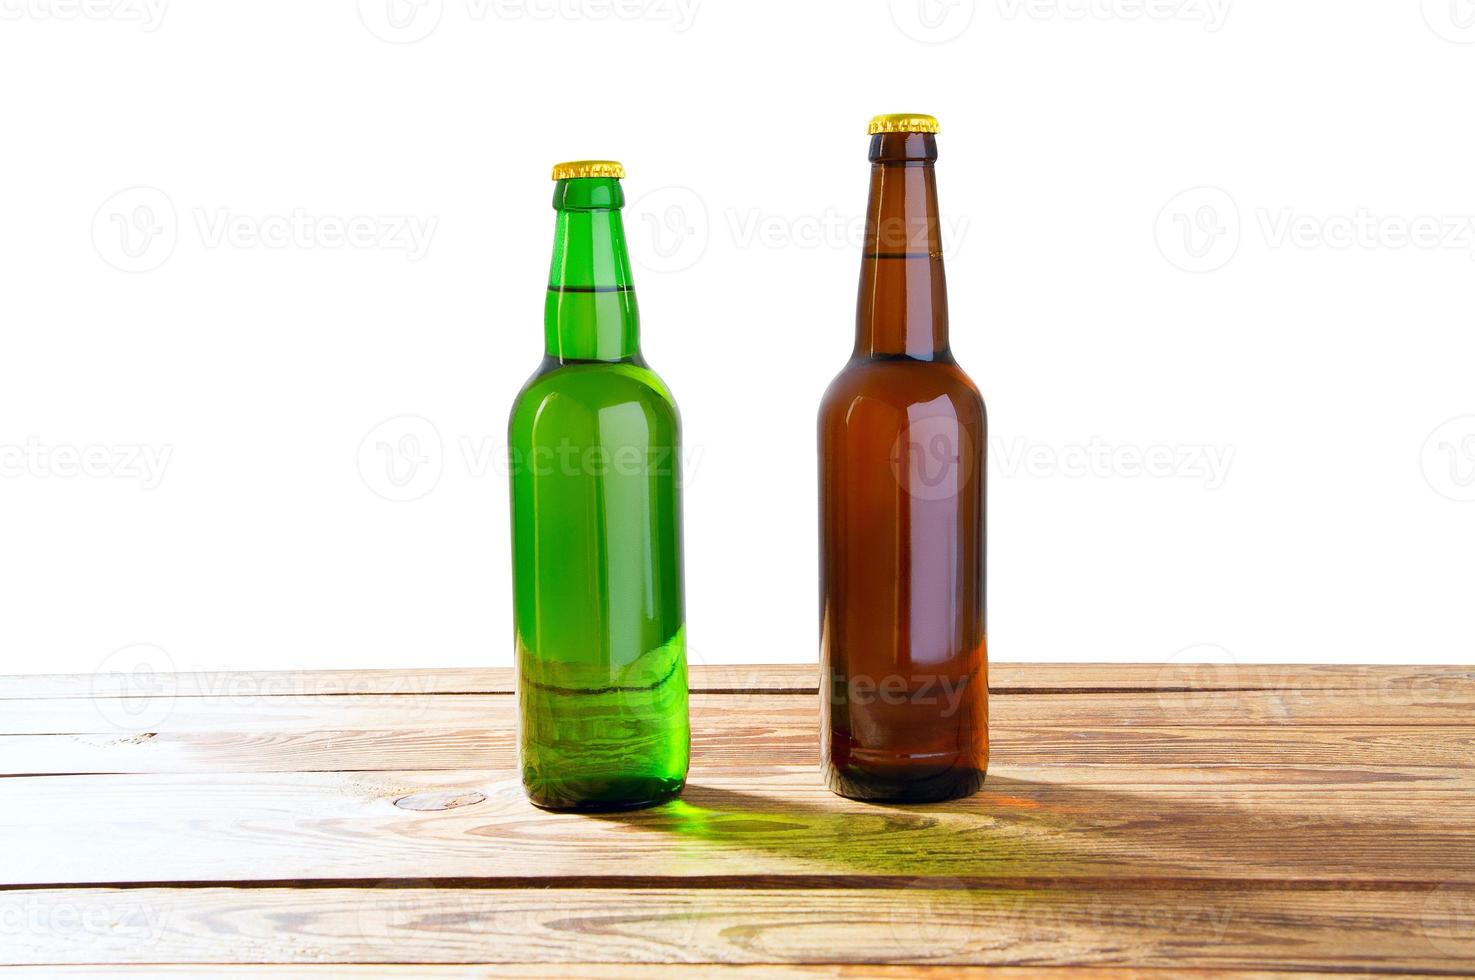 foto di due diverse bottiglie di birra piene senza etichette. percorso di ritaglio separato per ogni bottiglia incluso.2 due foto separate unite insieme. bottiglie di vetro birra diversa su sfondo bianco chiaro